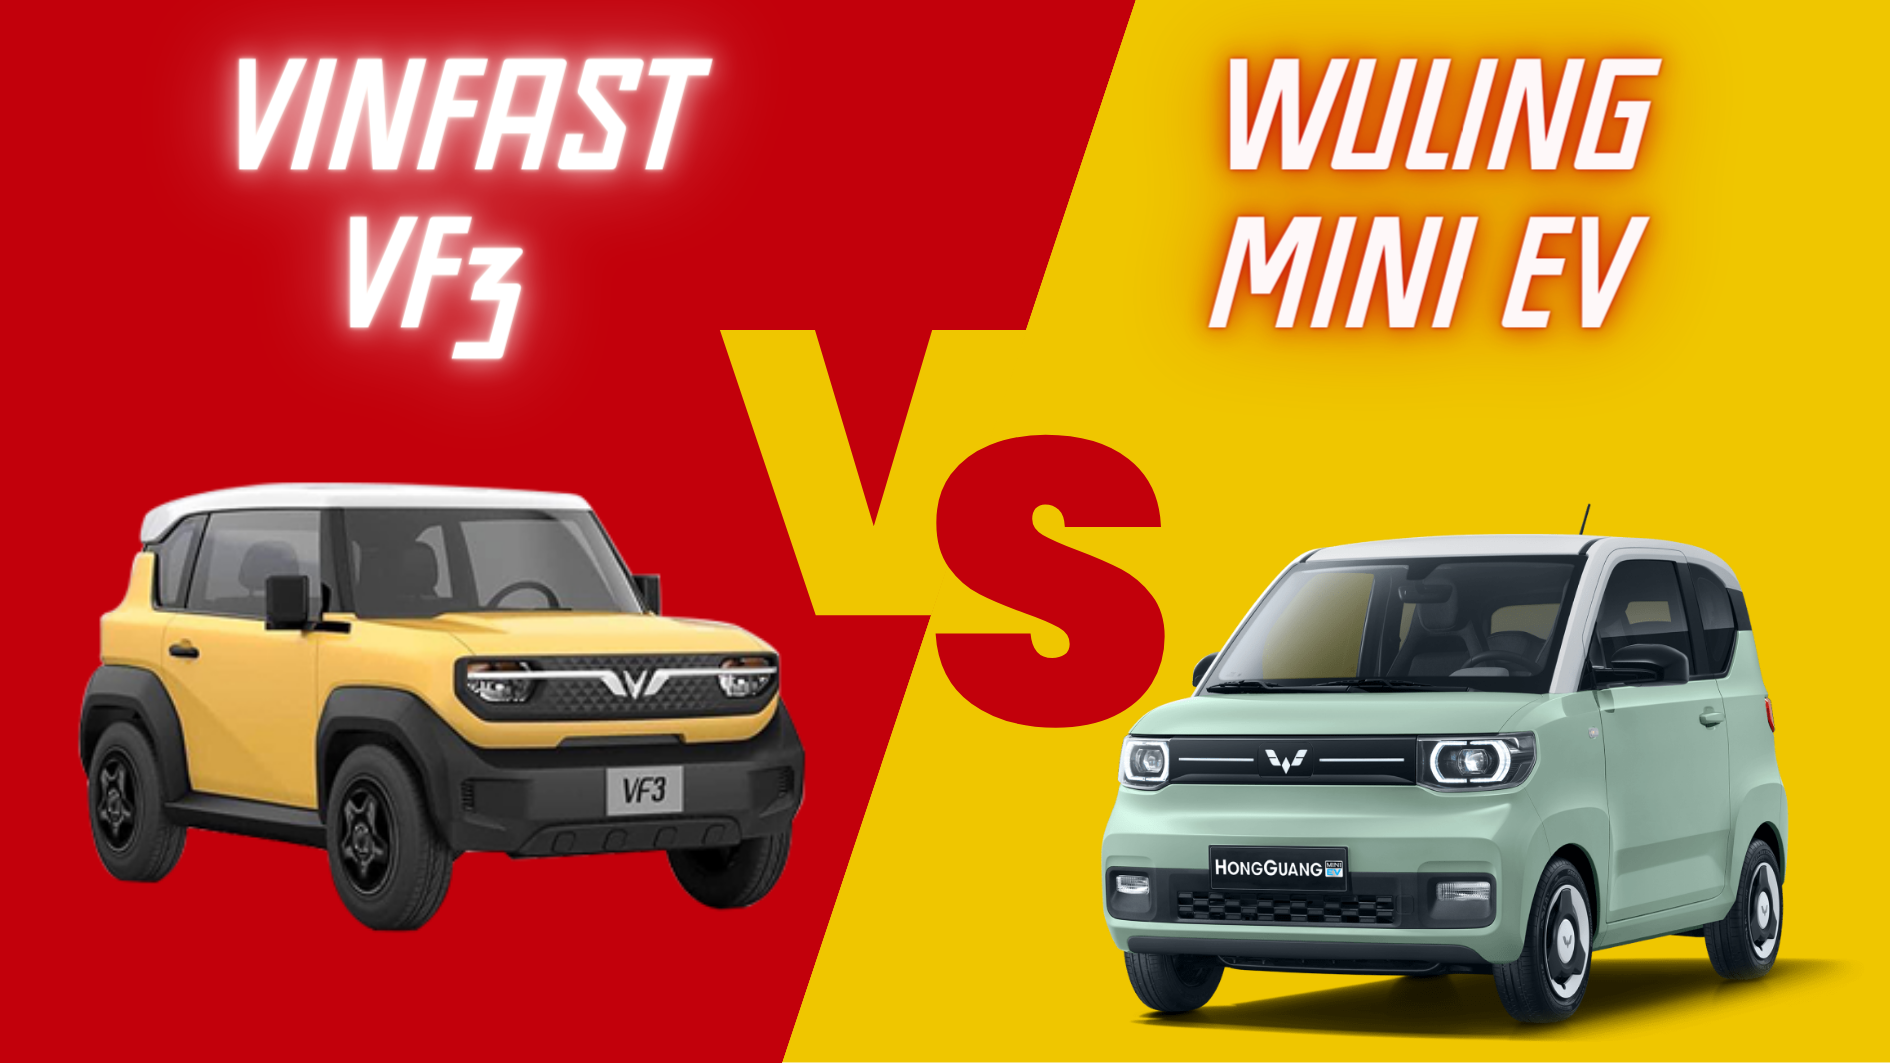  So sánh VinFast VF3 và Wuling Hongguang Mini EV: thông số kỹ thuật, động cơ, tiện nghi